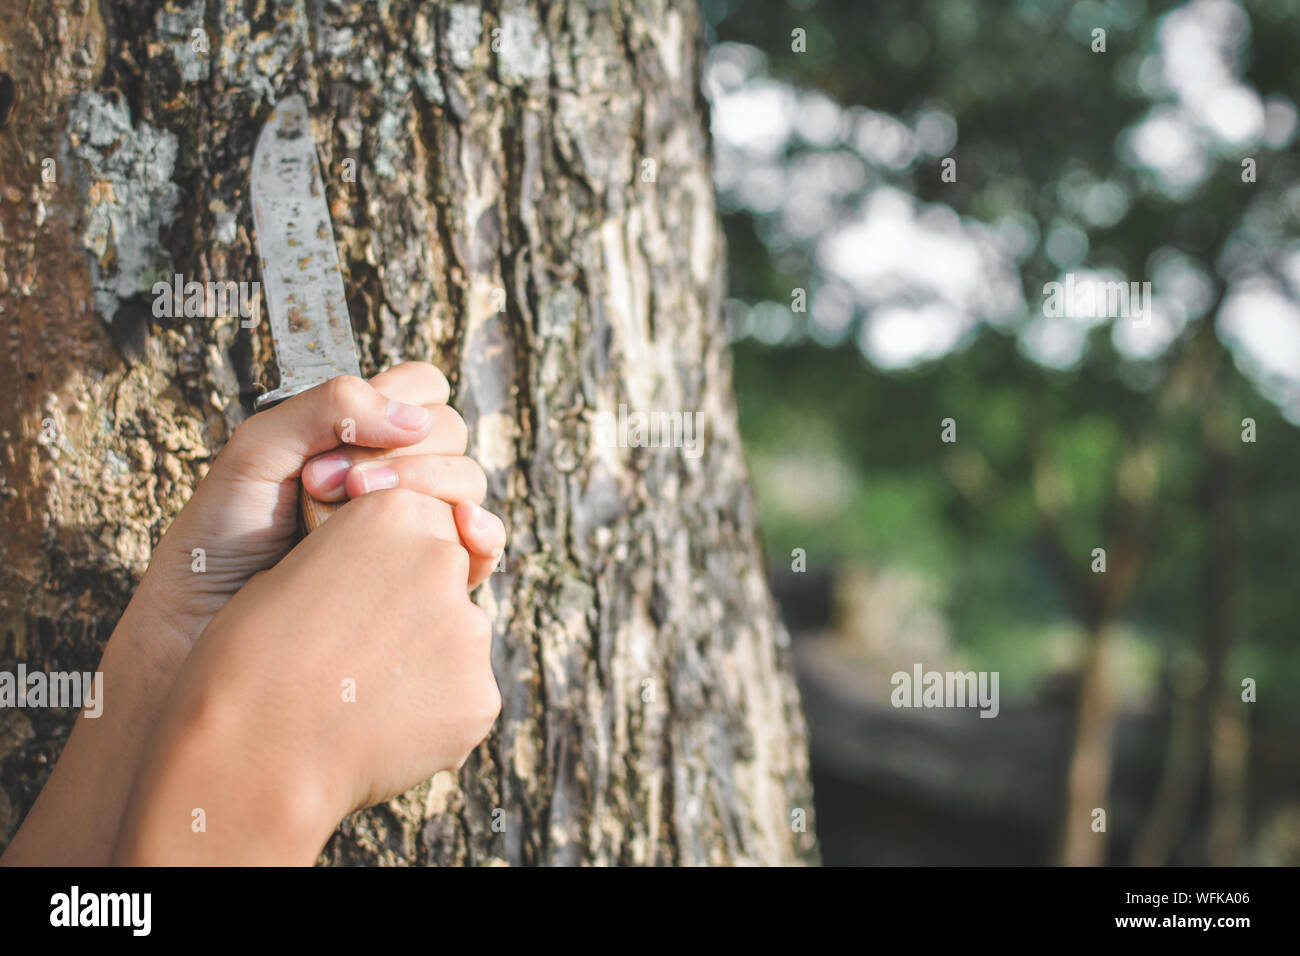 Recortado manos sosteniendo un cuchillo por tronco de árbol Foto de stock